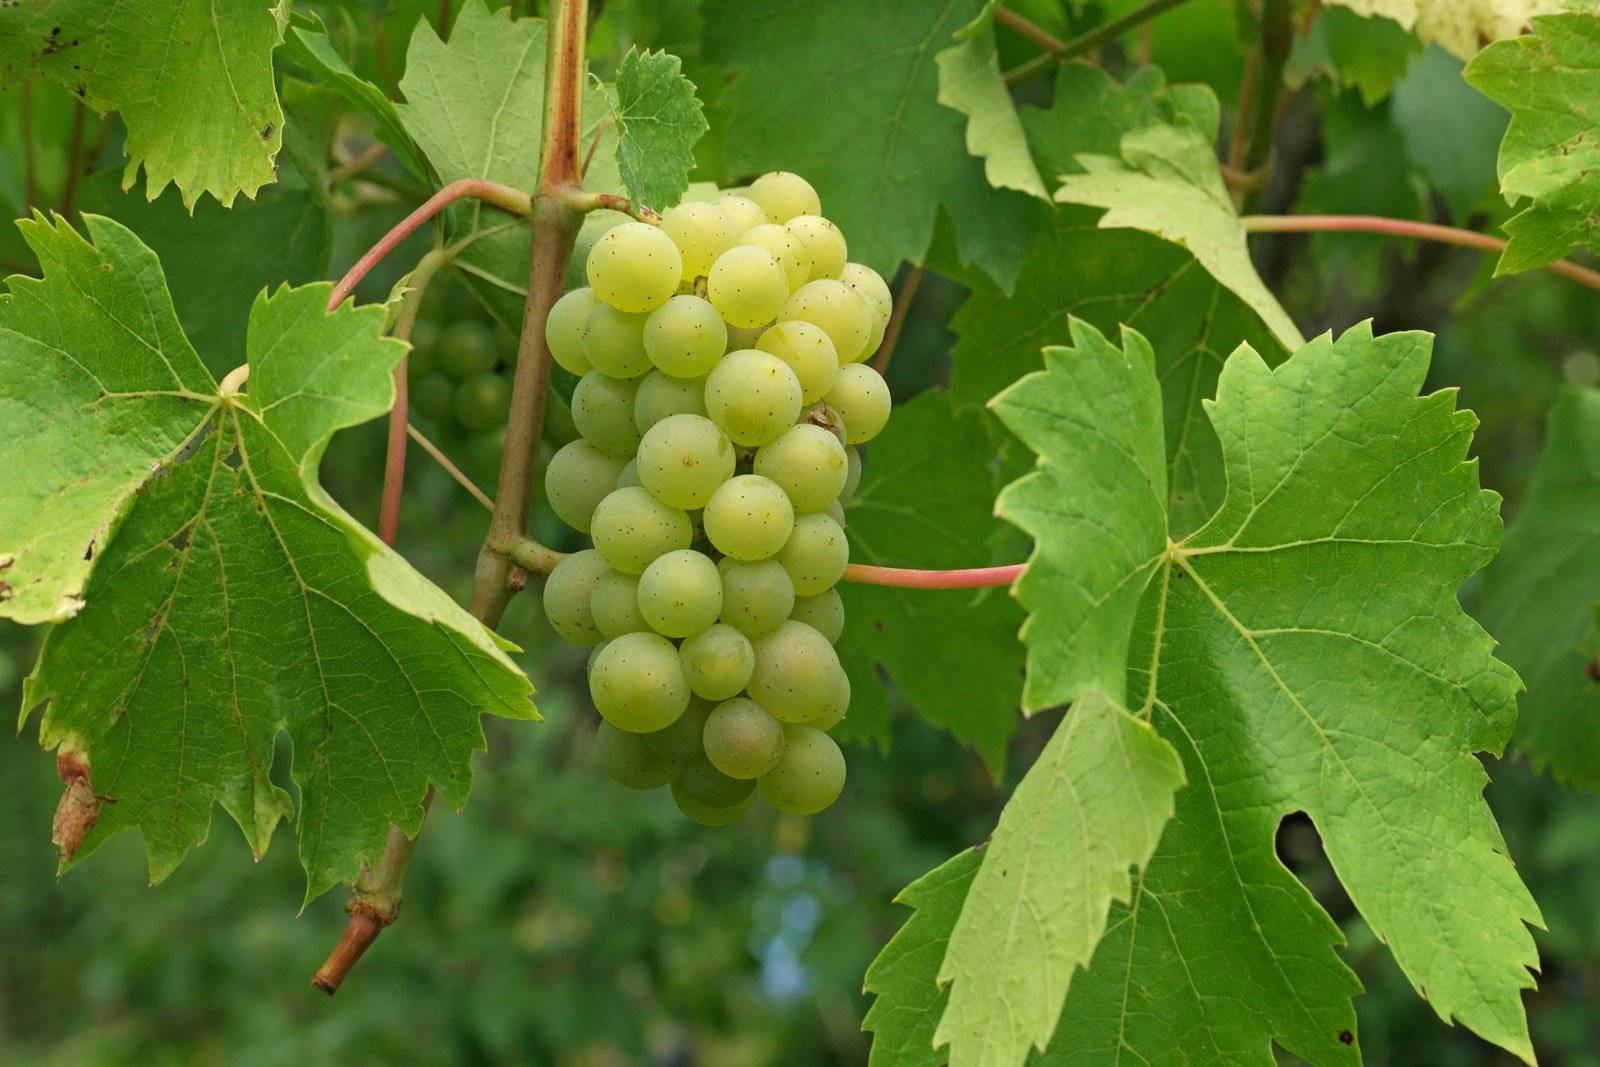 Циссус - домашний виноград, можно ли держать дома, виды, уход, фото